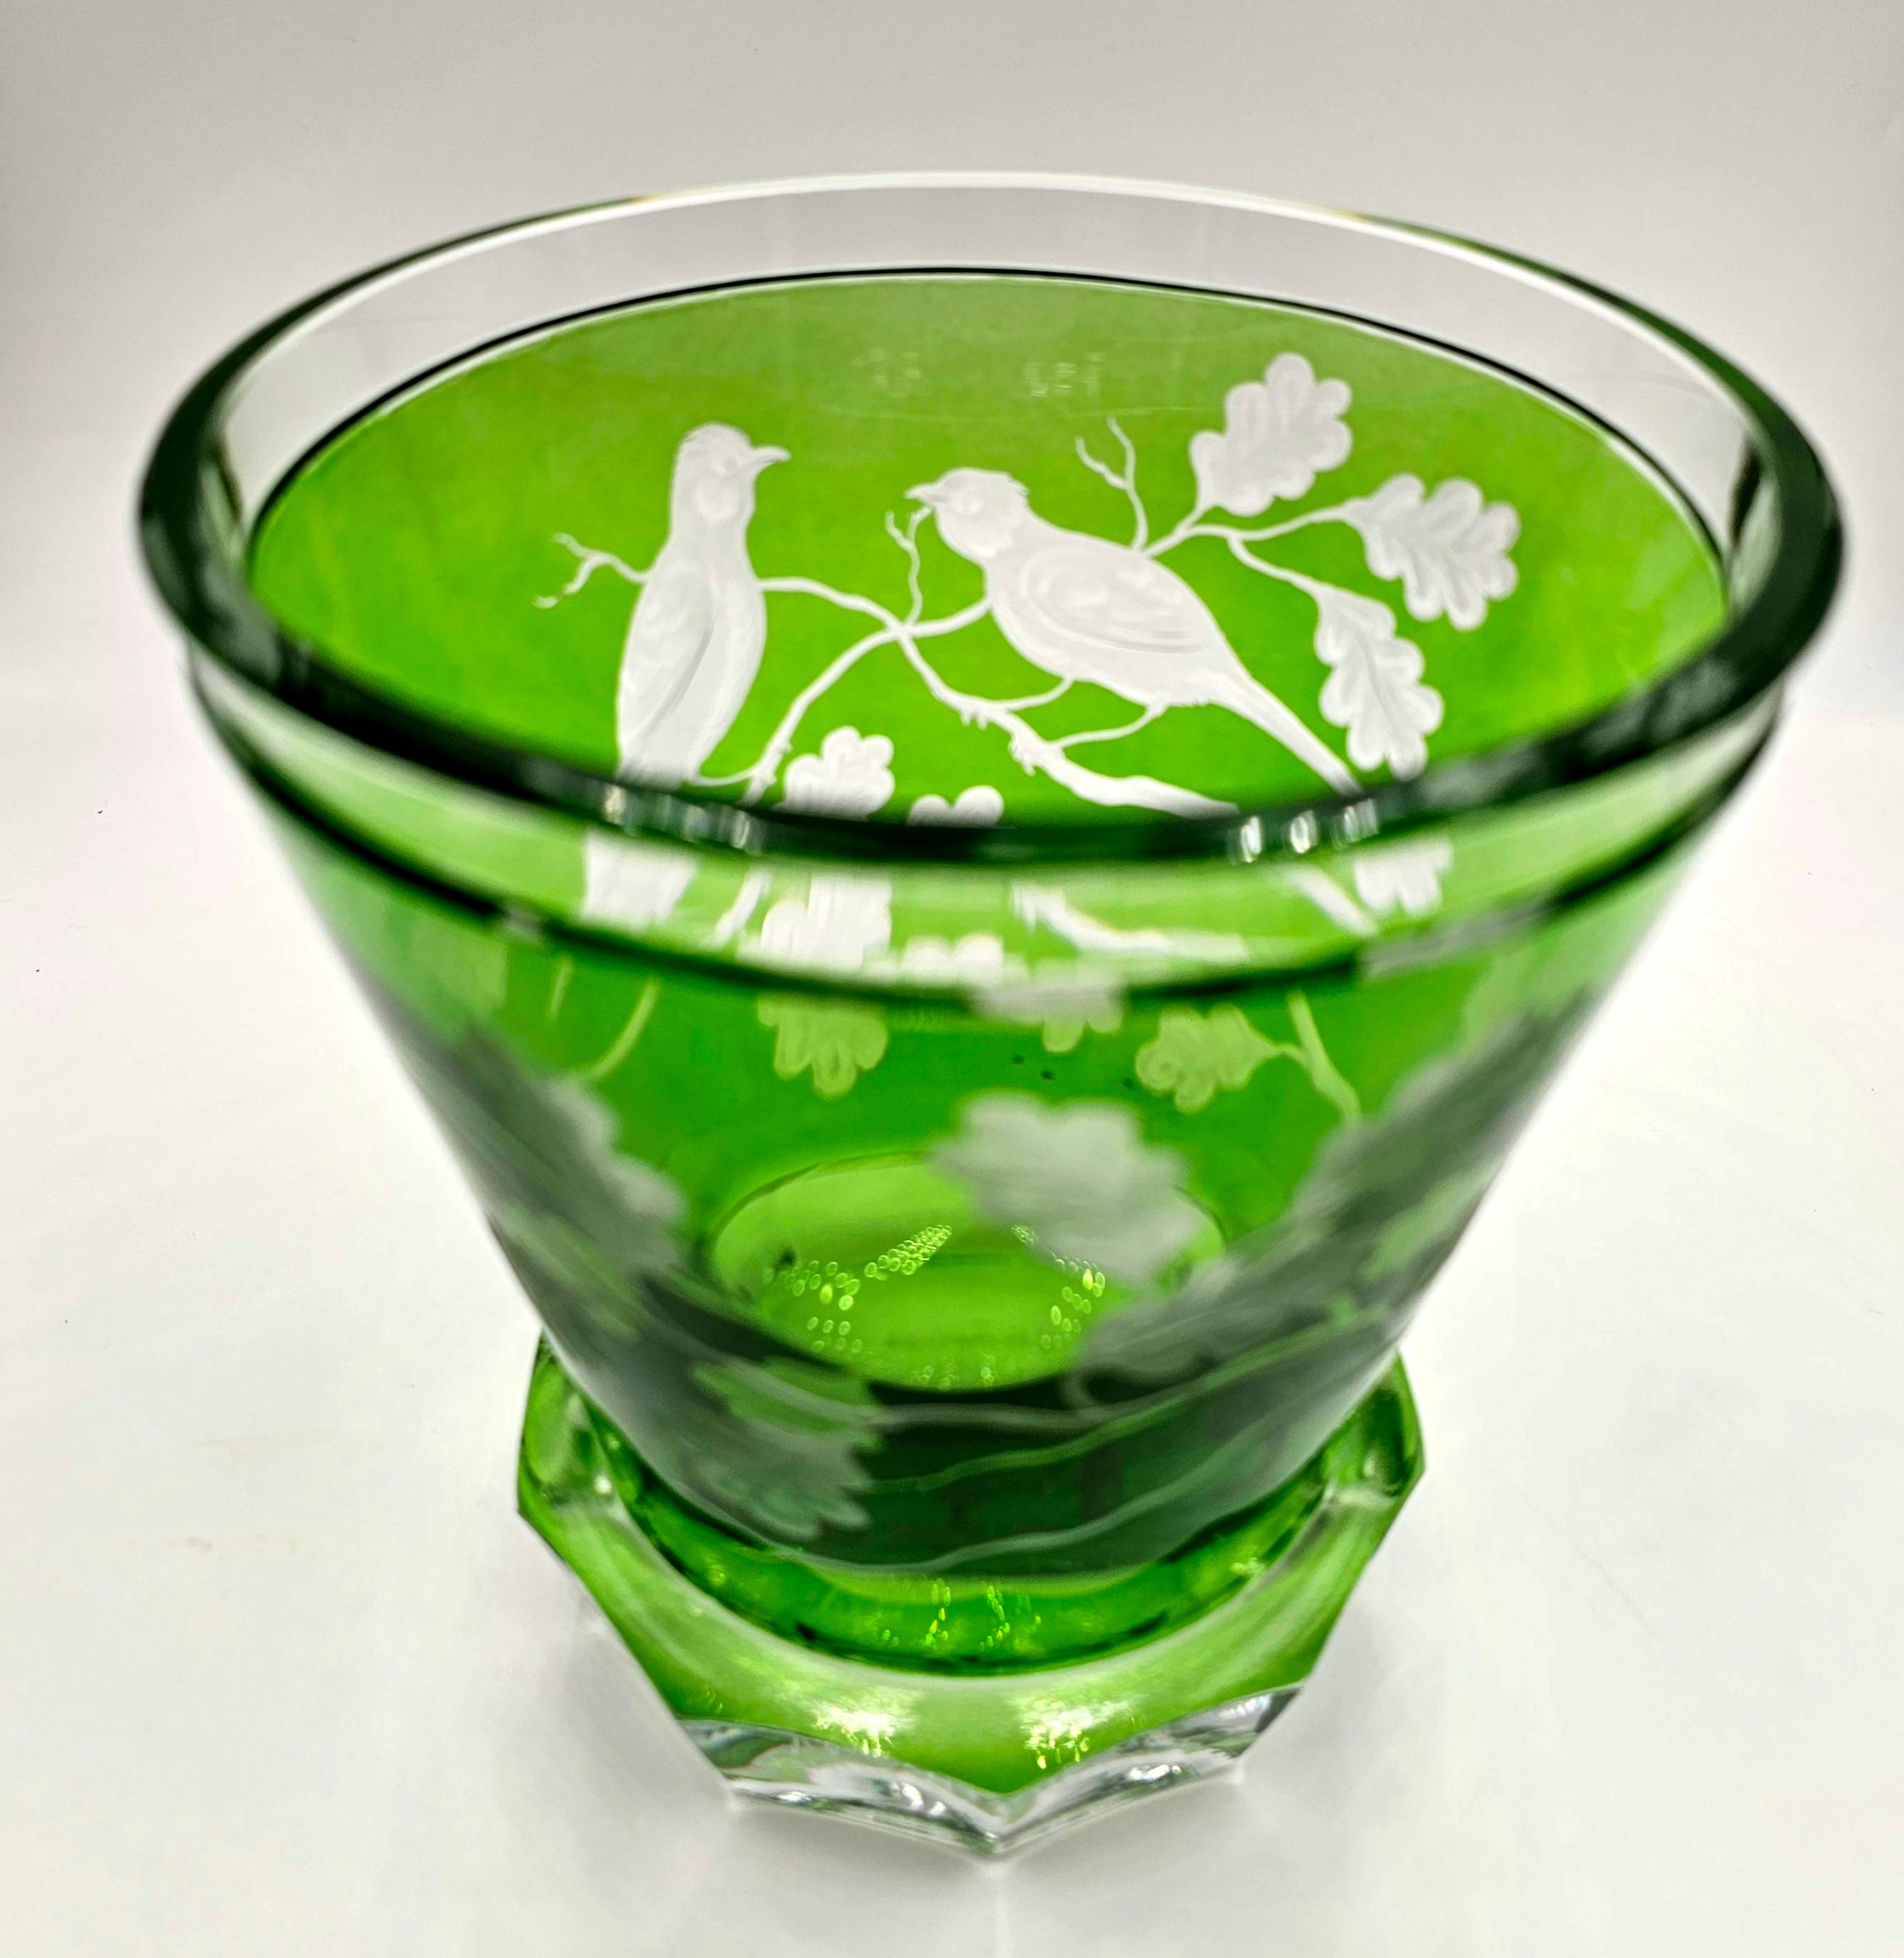 Vase aus mundgeblasenem Kristall in grünem Glas mit einem Dekor aus Vögeln und Eichenblättern rundherum. Das Dekor wird von Künstlern freihändig graviert und der Boden des Glases wird von Hand geschnitzt. Das hier gezeigte Glas in grüner Farbe kann